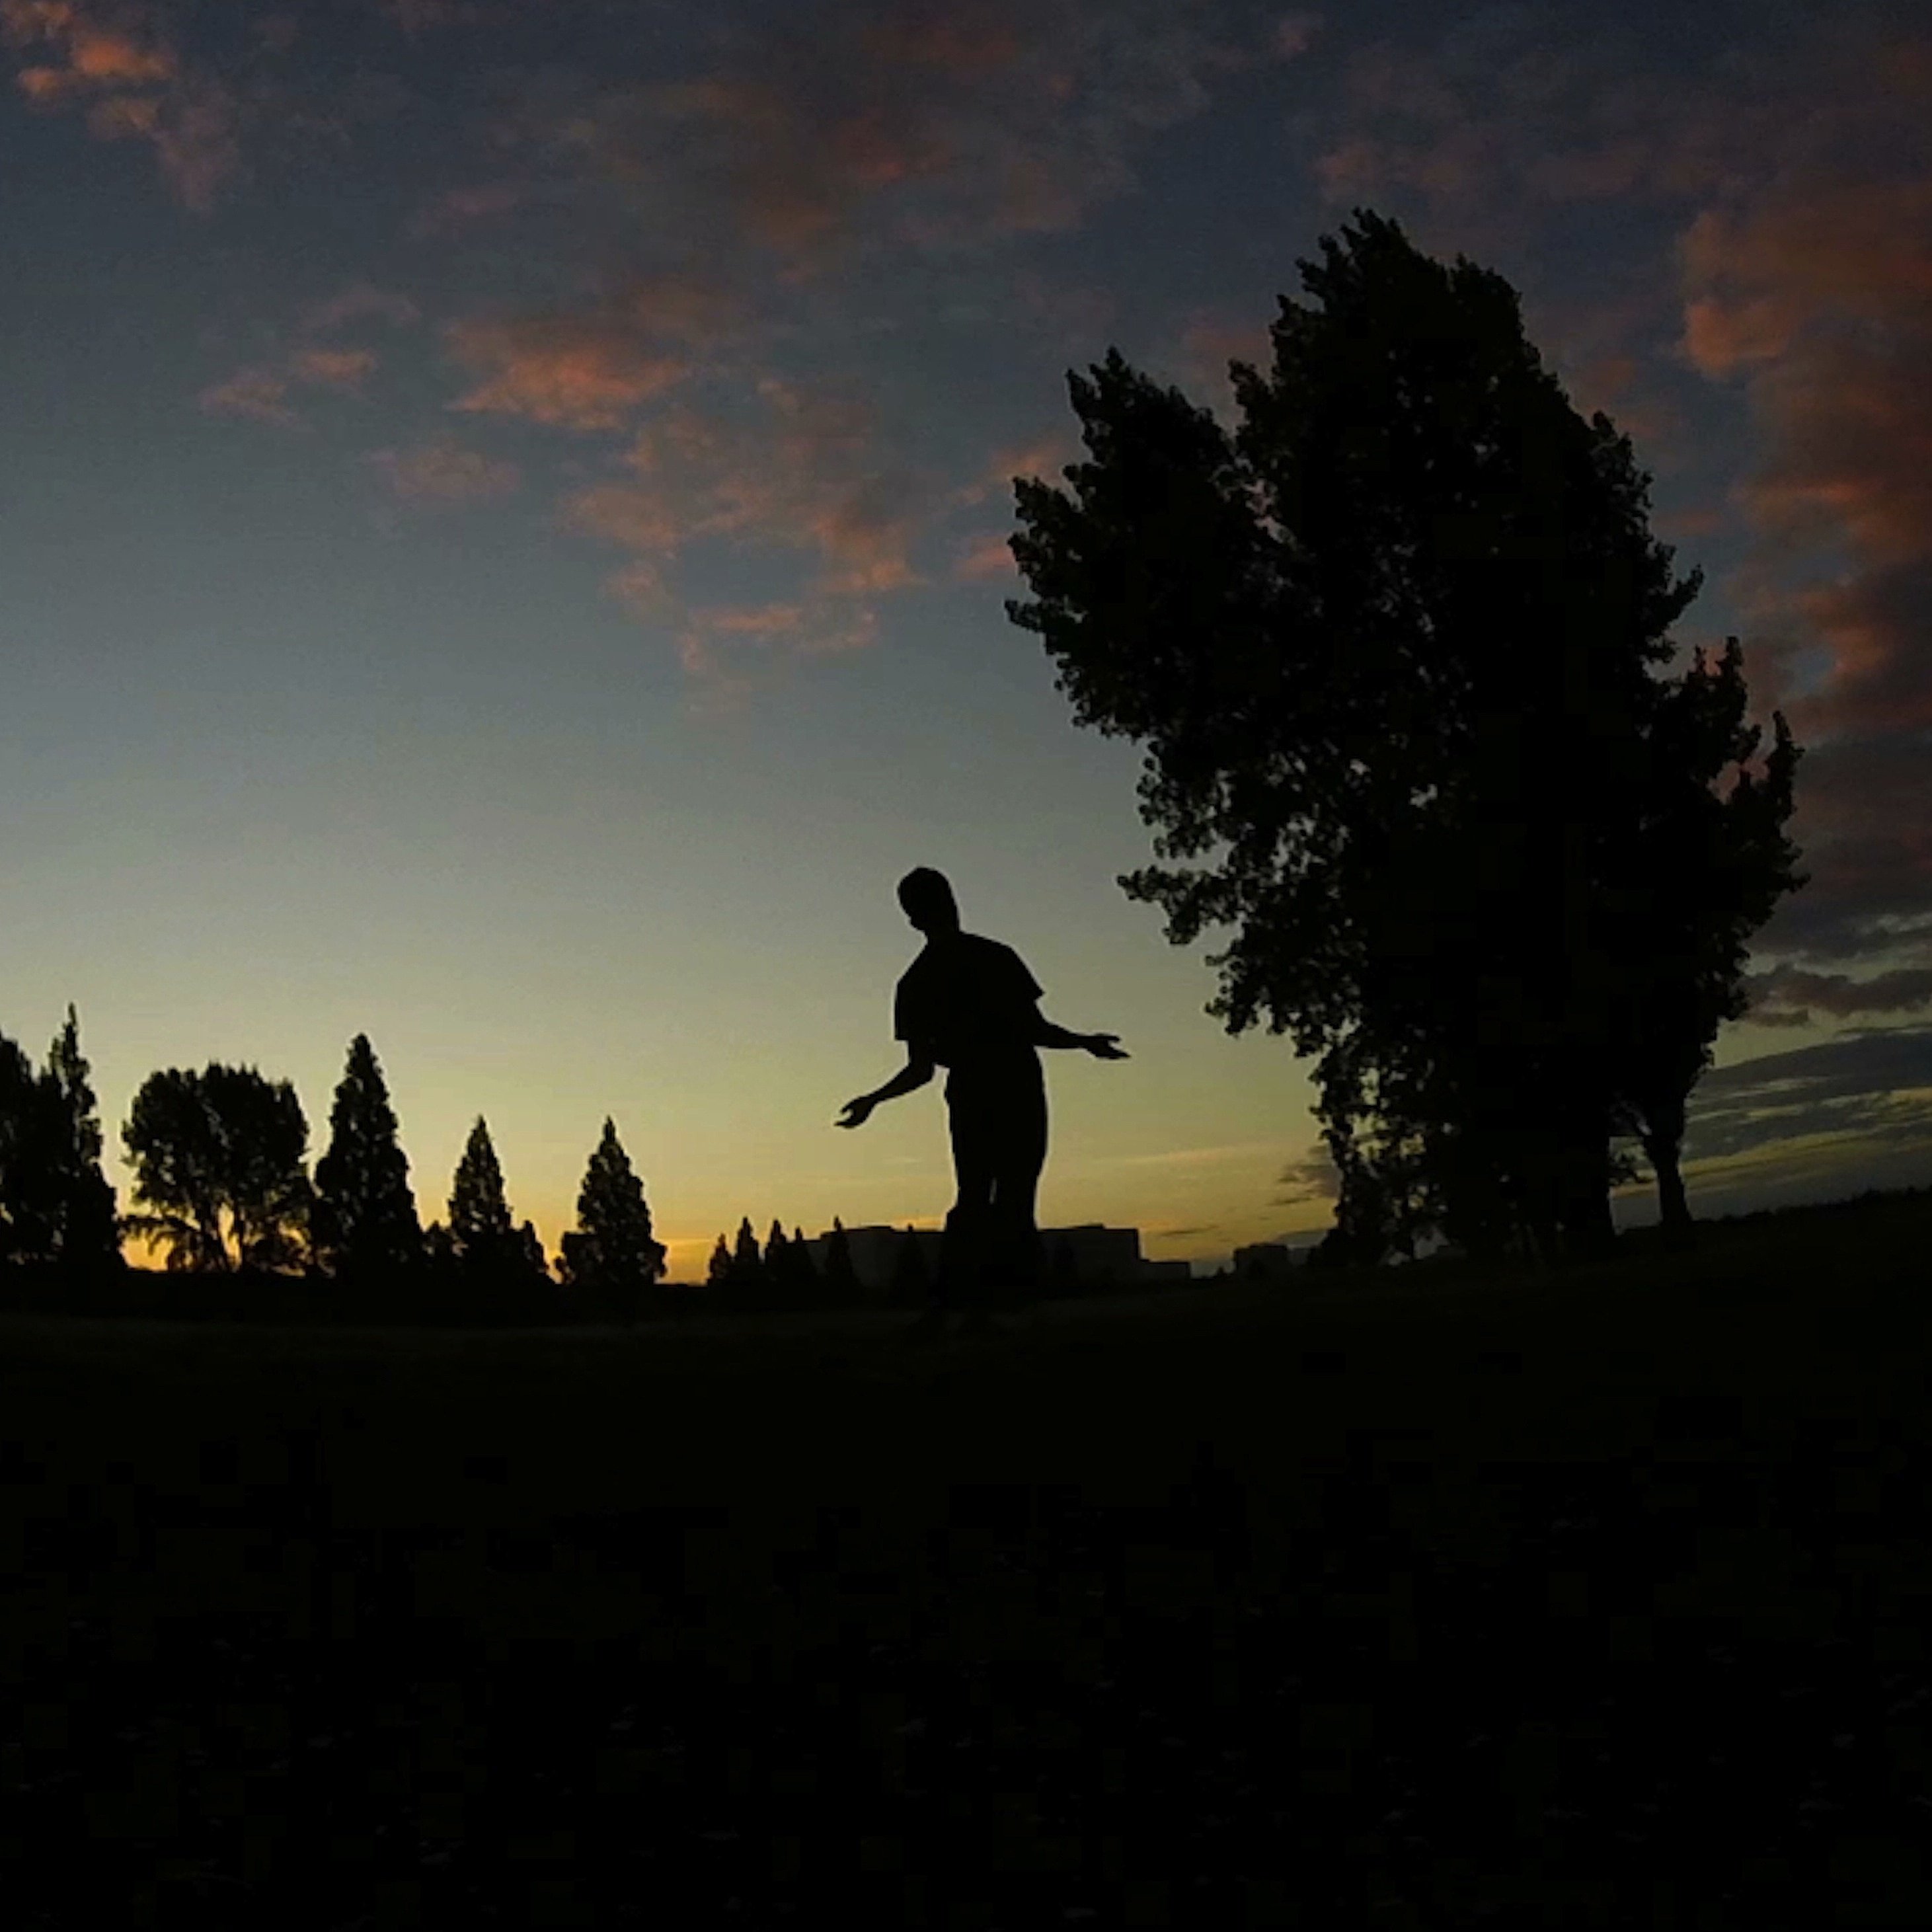 Le jogger et le golf : image extraite de notre court-métrage "Urgere".